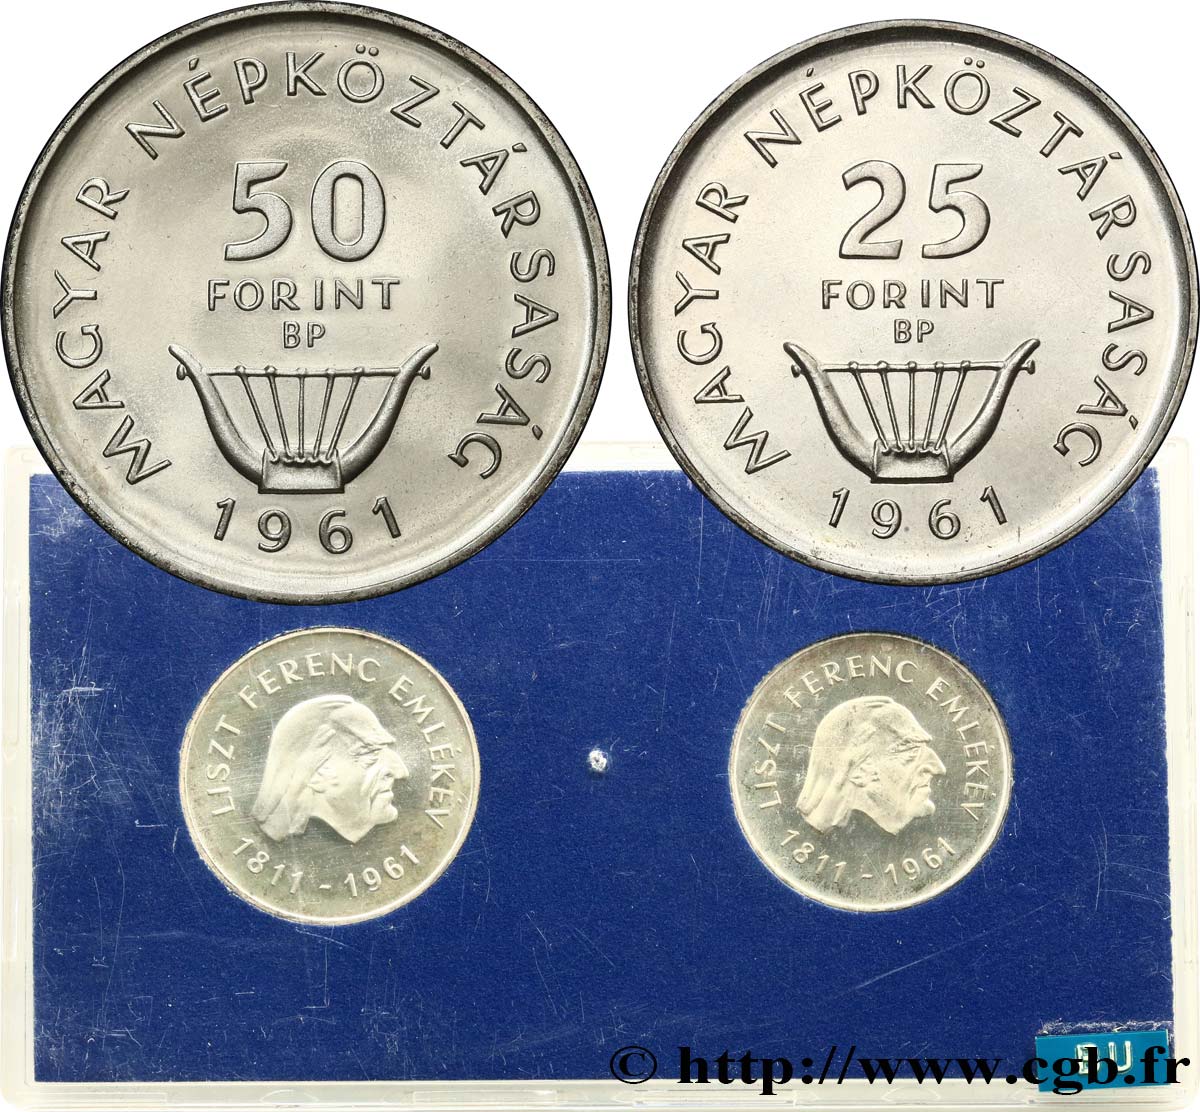 HONGRIE Série Proof - 2 monnaies - Forint 150e anniversaire naissance de Ferenc (Franz) Liszt 1961 Budapest SUP 